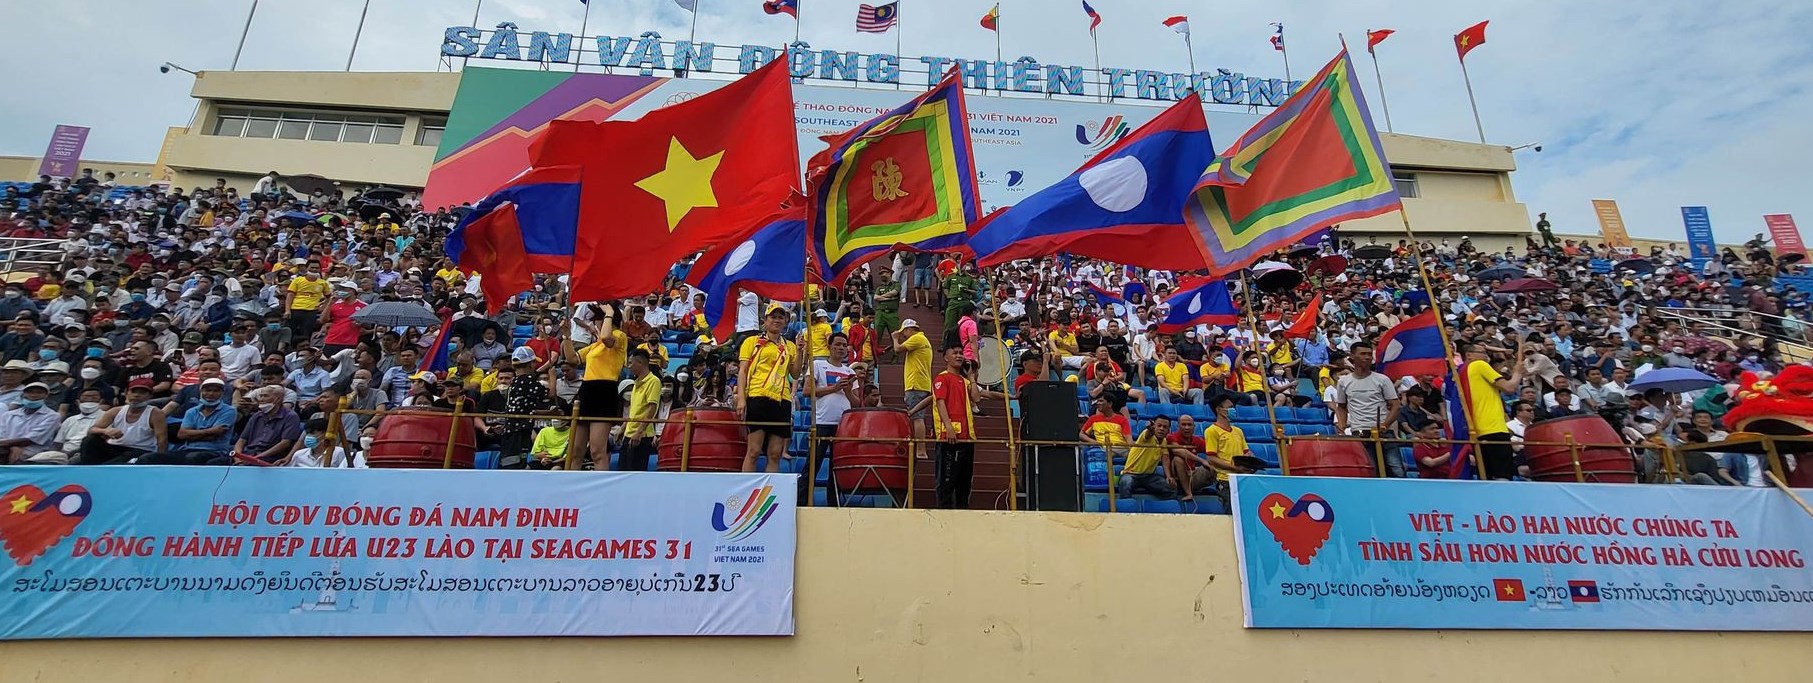 CĐV Nam Định: Những CĐV của Nam Định luôn được biết đến là những người yêu bóng đá đích thực, với sự nhiệt tình hỗ trợ đội bóng của mình trong mỗi trận đấu. Nhờ sự cổ vũ của các CĐV, đội bóng được truyền động lực để phát huy tối đa khả năng và giành chiến thắng.